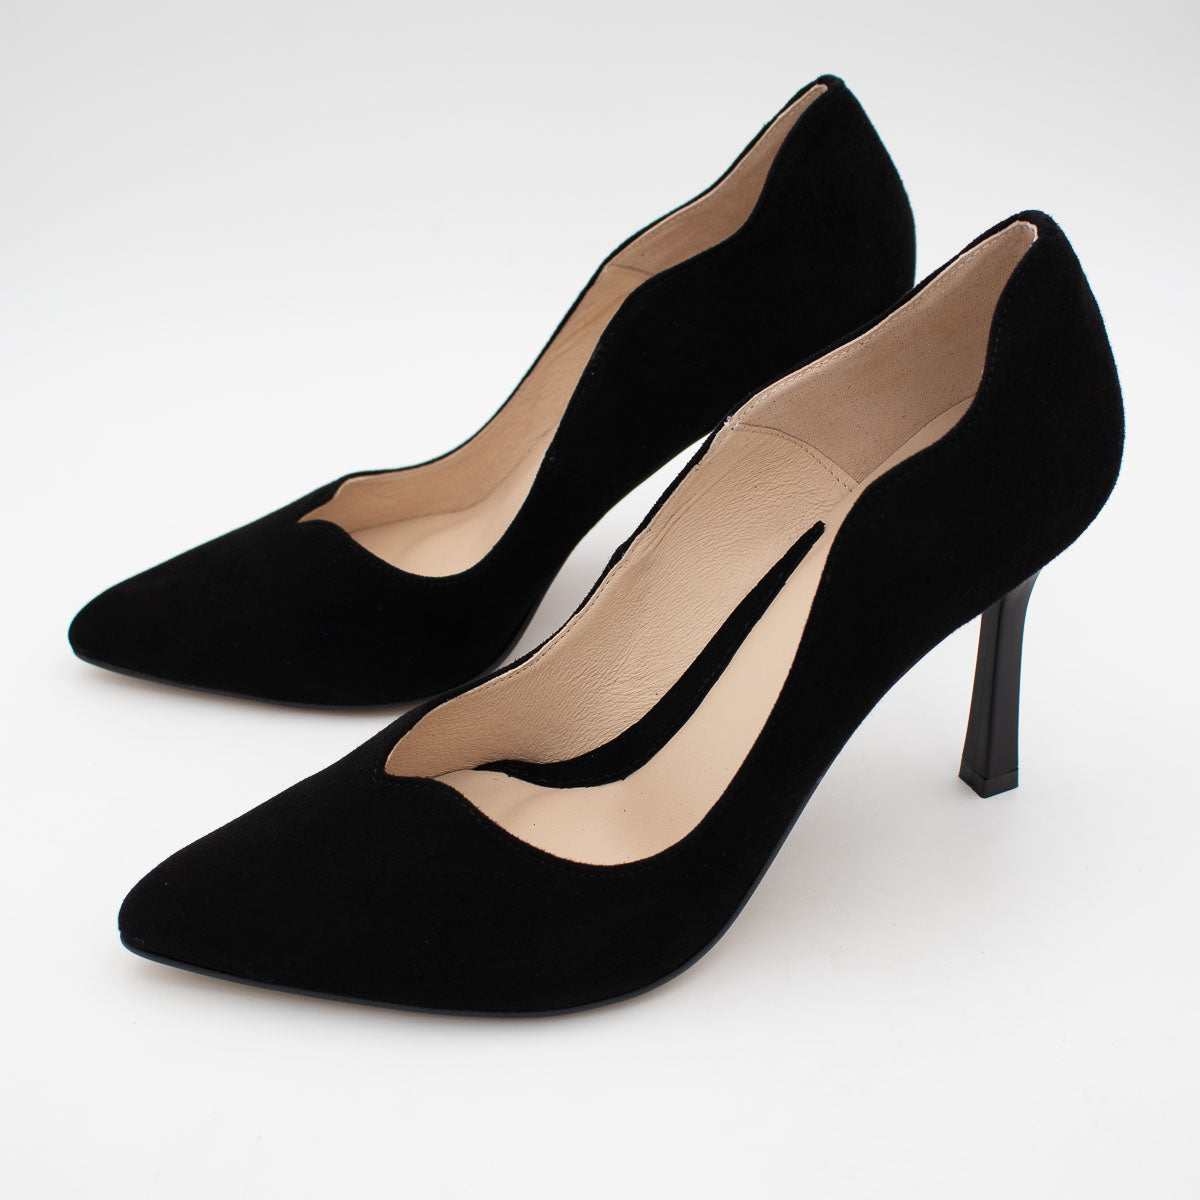 Sleek and Timeless Black High Heels for Effortless Elegance